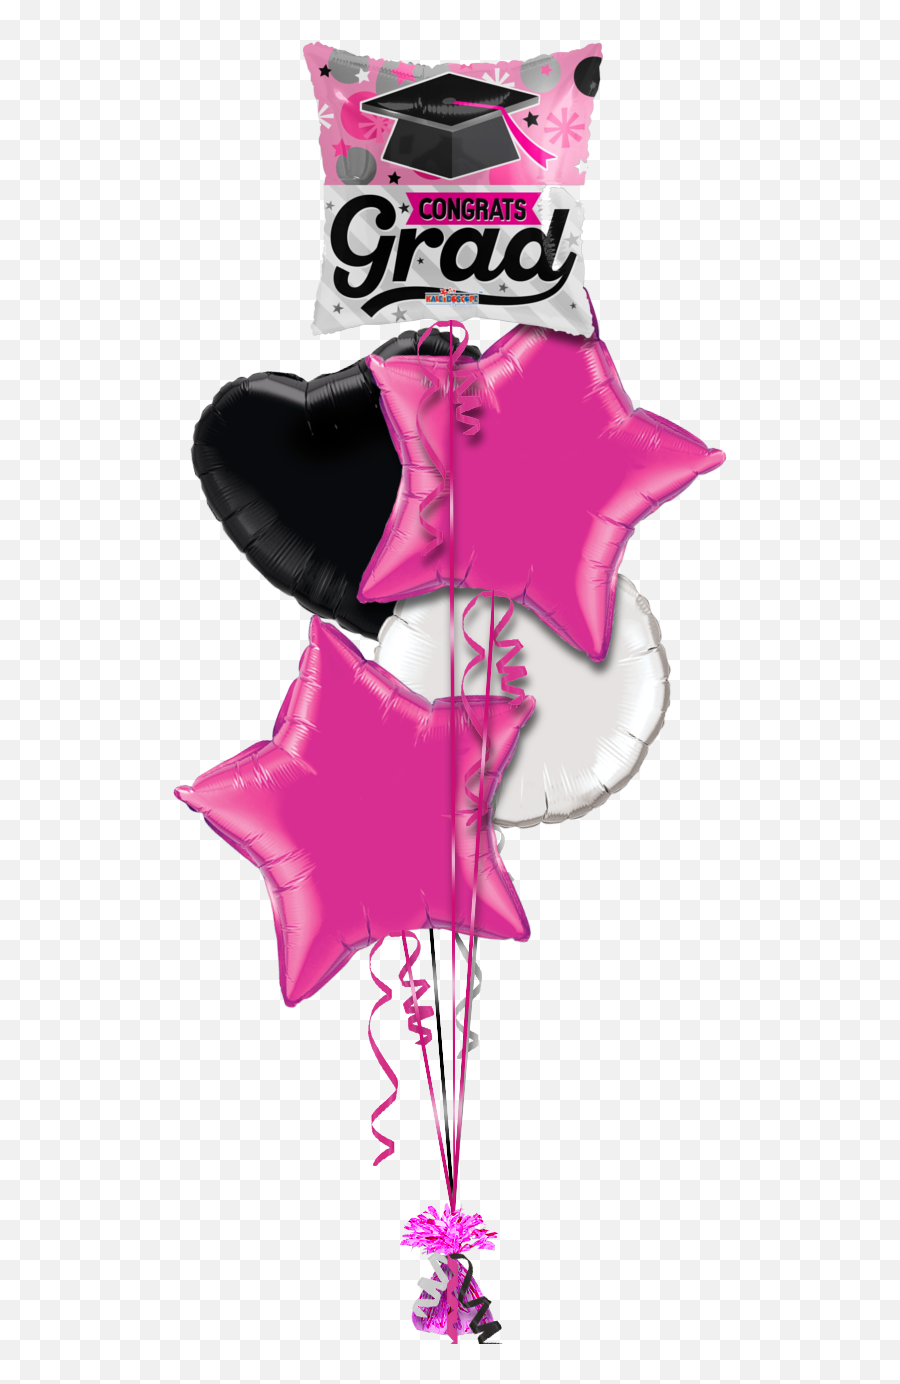 Download Congrats Grad Cap Pink Congratulations Balloon - 18 Pink Graduation Balloon Emoji,Grad Cap Emoji